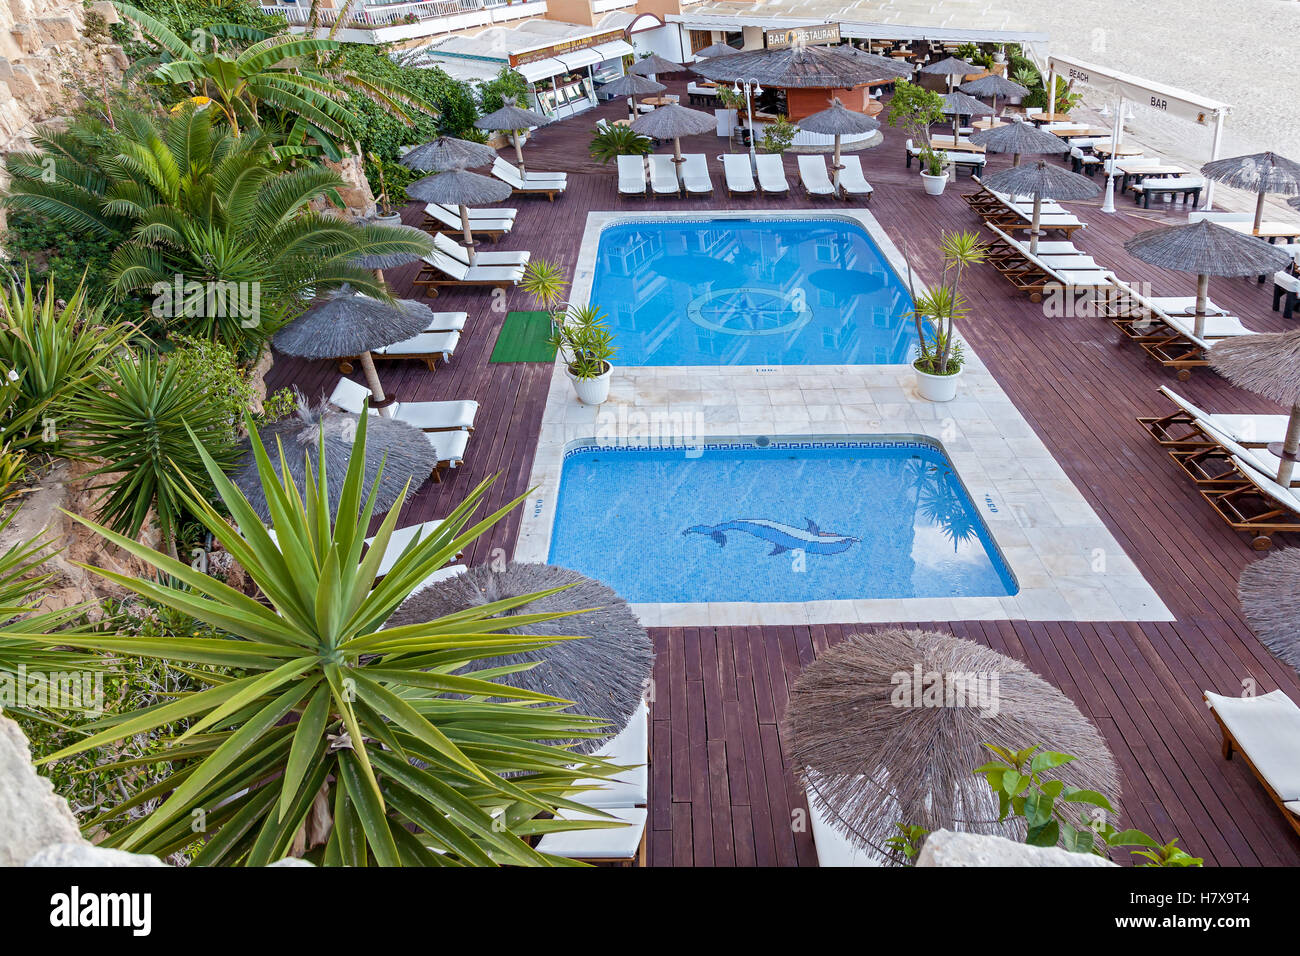 Spagna Palma il 19 giugno due piscine turchese tra sedie a sdraio con capannoni e palme, 19 giugno 2016 la Spagna Palma Foto Stock